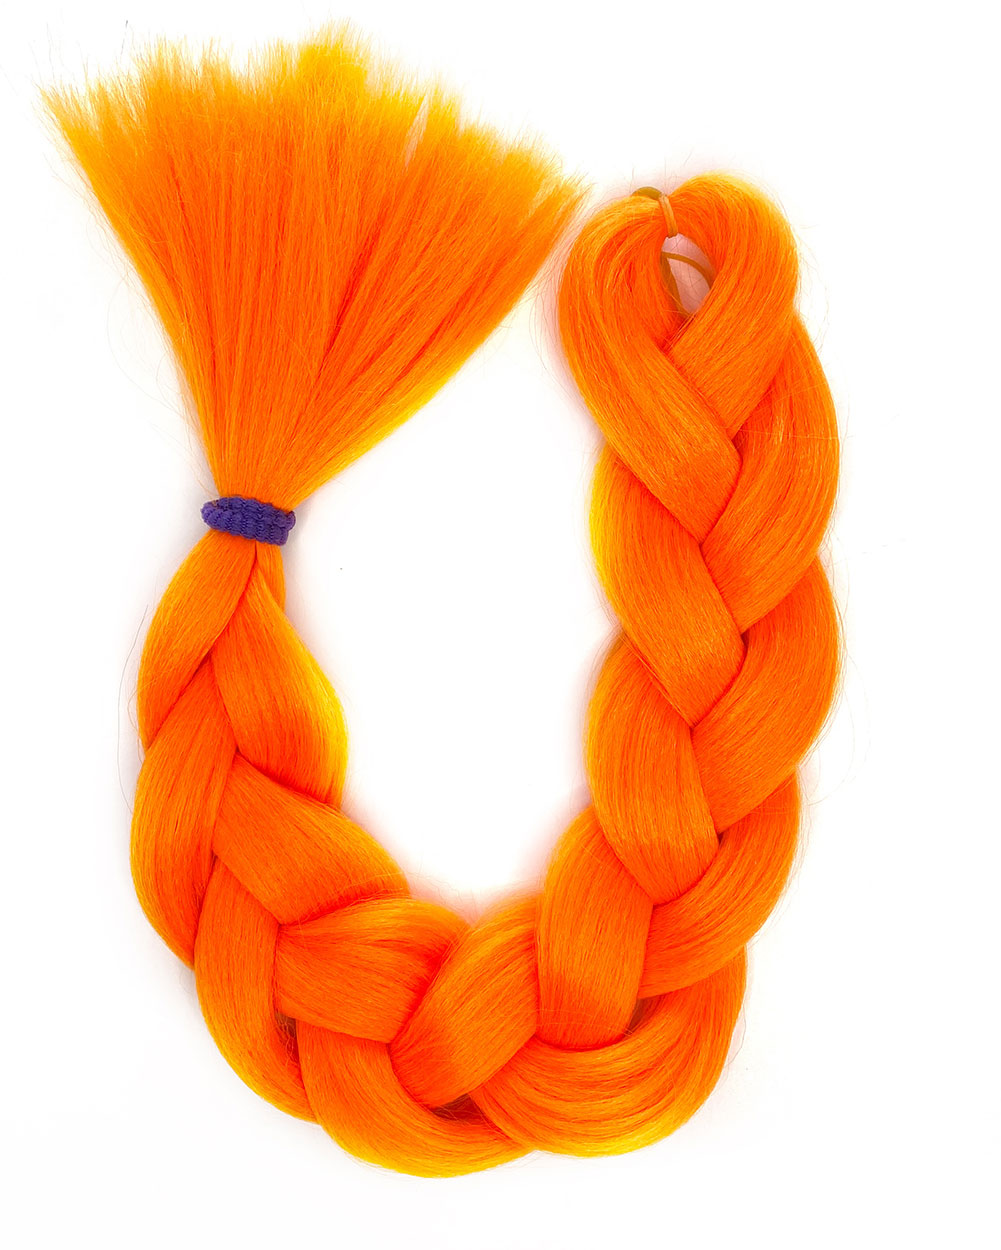 Bang - Bright Orange Hair Extension - Lunautics Braid-In Hair